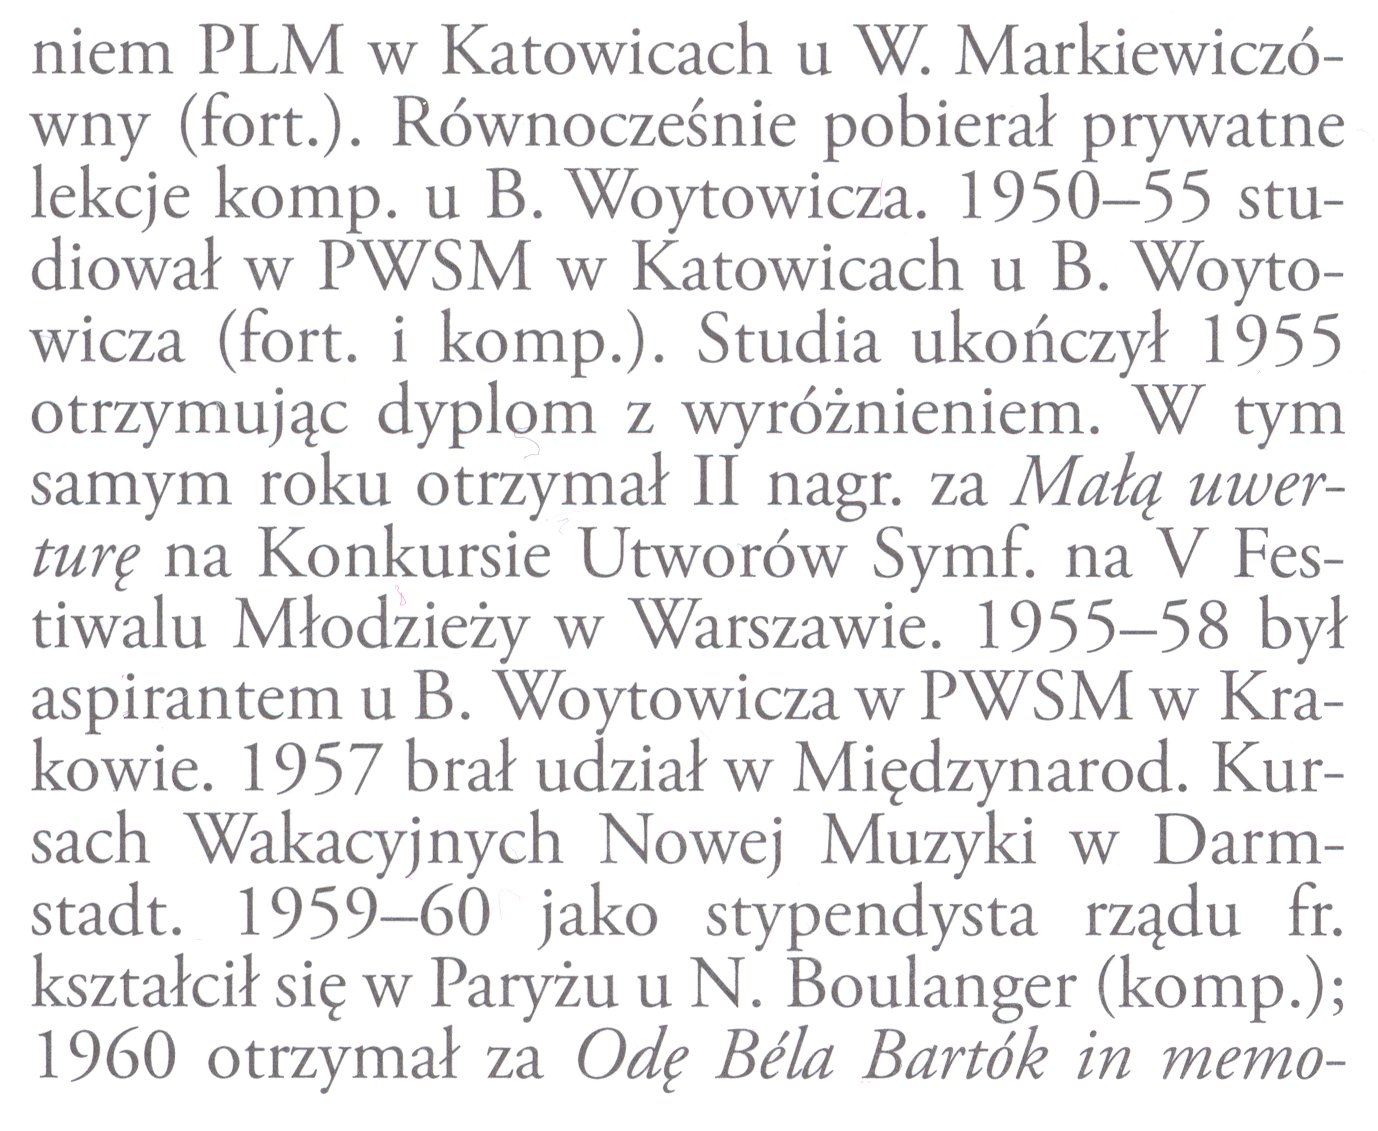 Wikipedia, Encyklopedia Muzyczna PWM, Items with OTRS permission confirmed, Self-published work, Wik